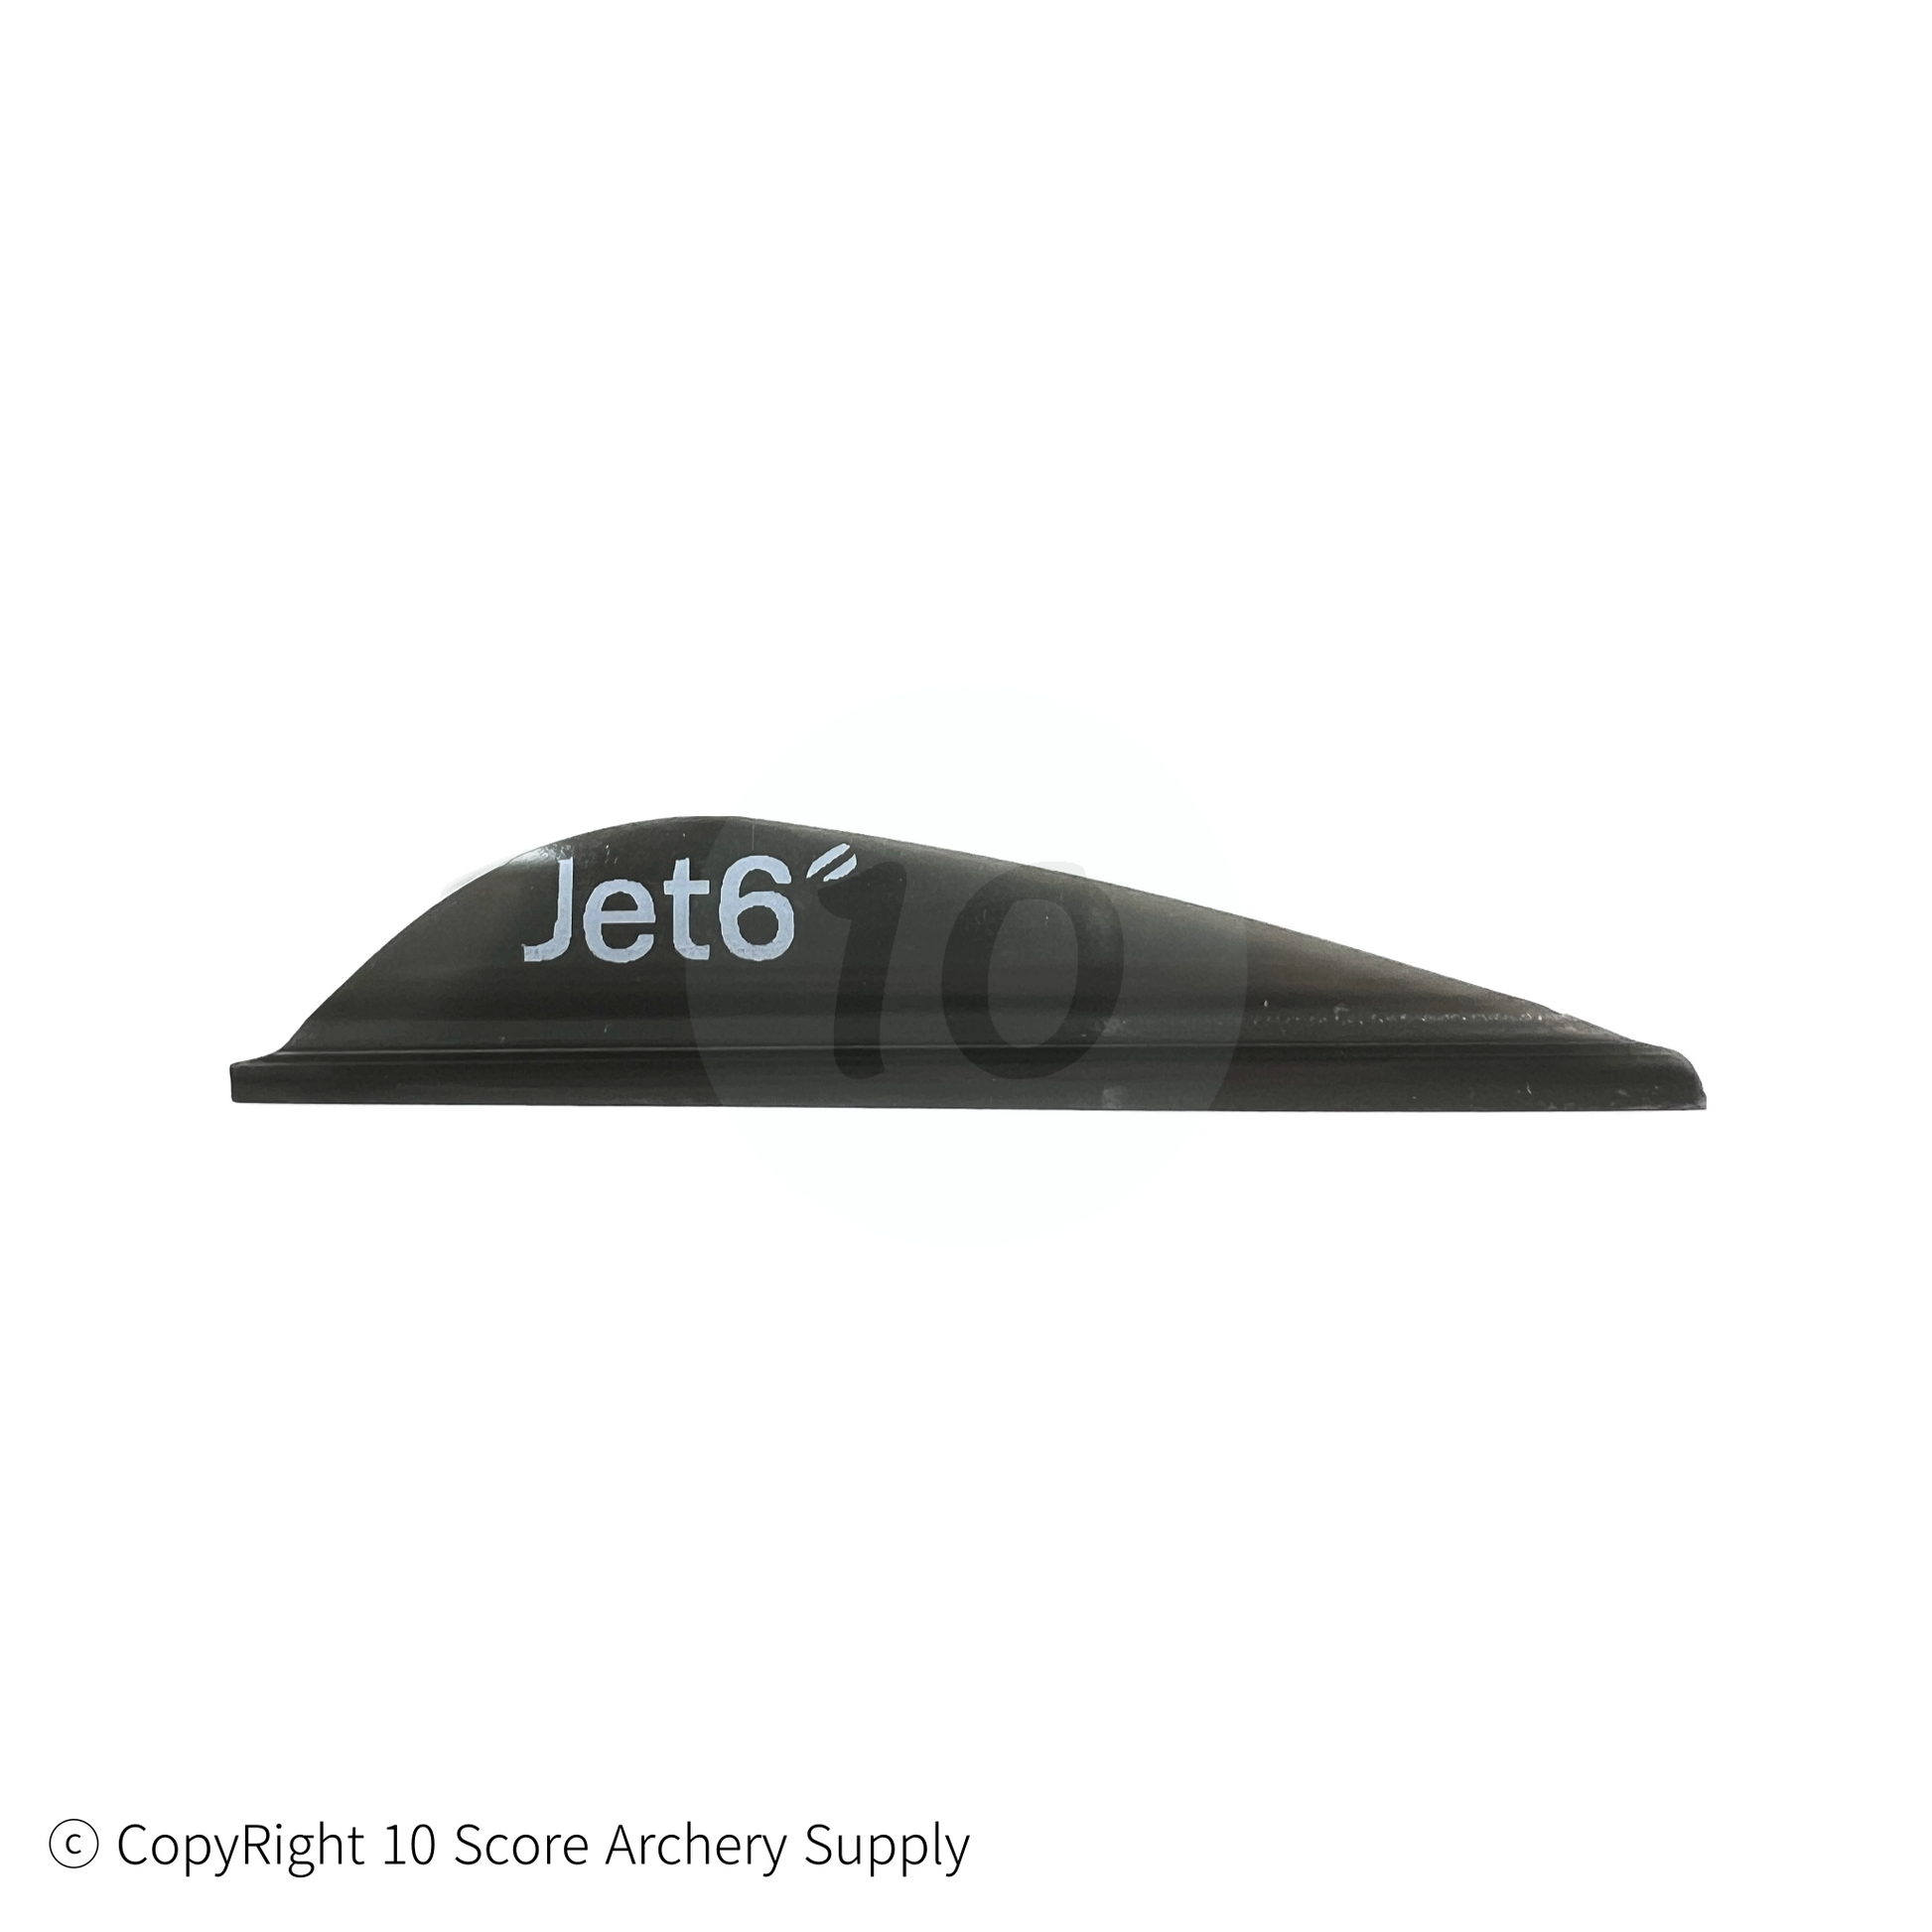 Jet6 Vanes (Black)